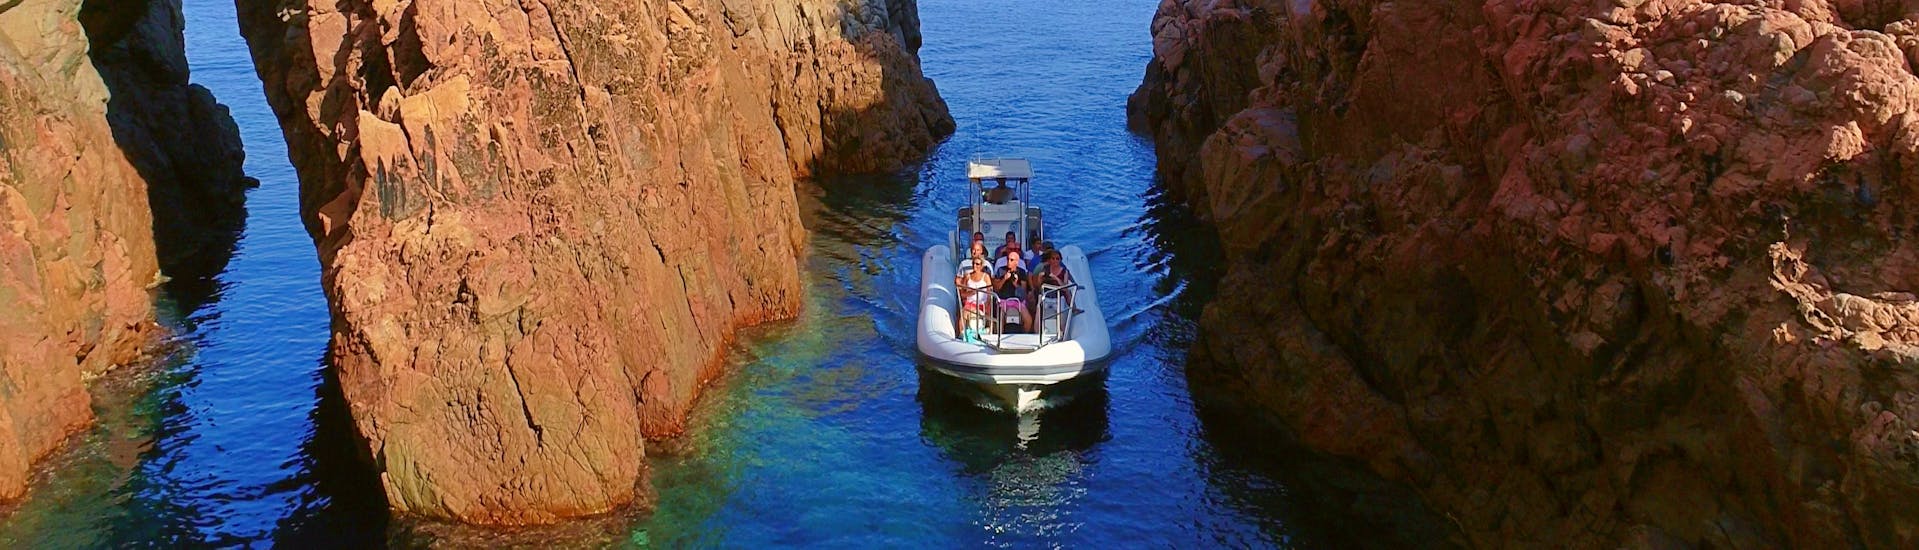 Une famille fait une Balade semi-privée en bateau vers les calanques de Piana depuis Cargèse  Croisière Grand Bleu Cargèse.